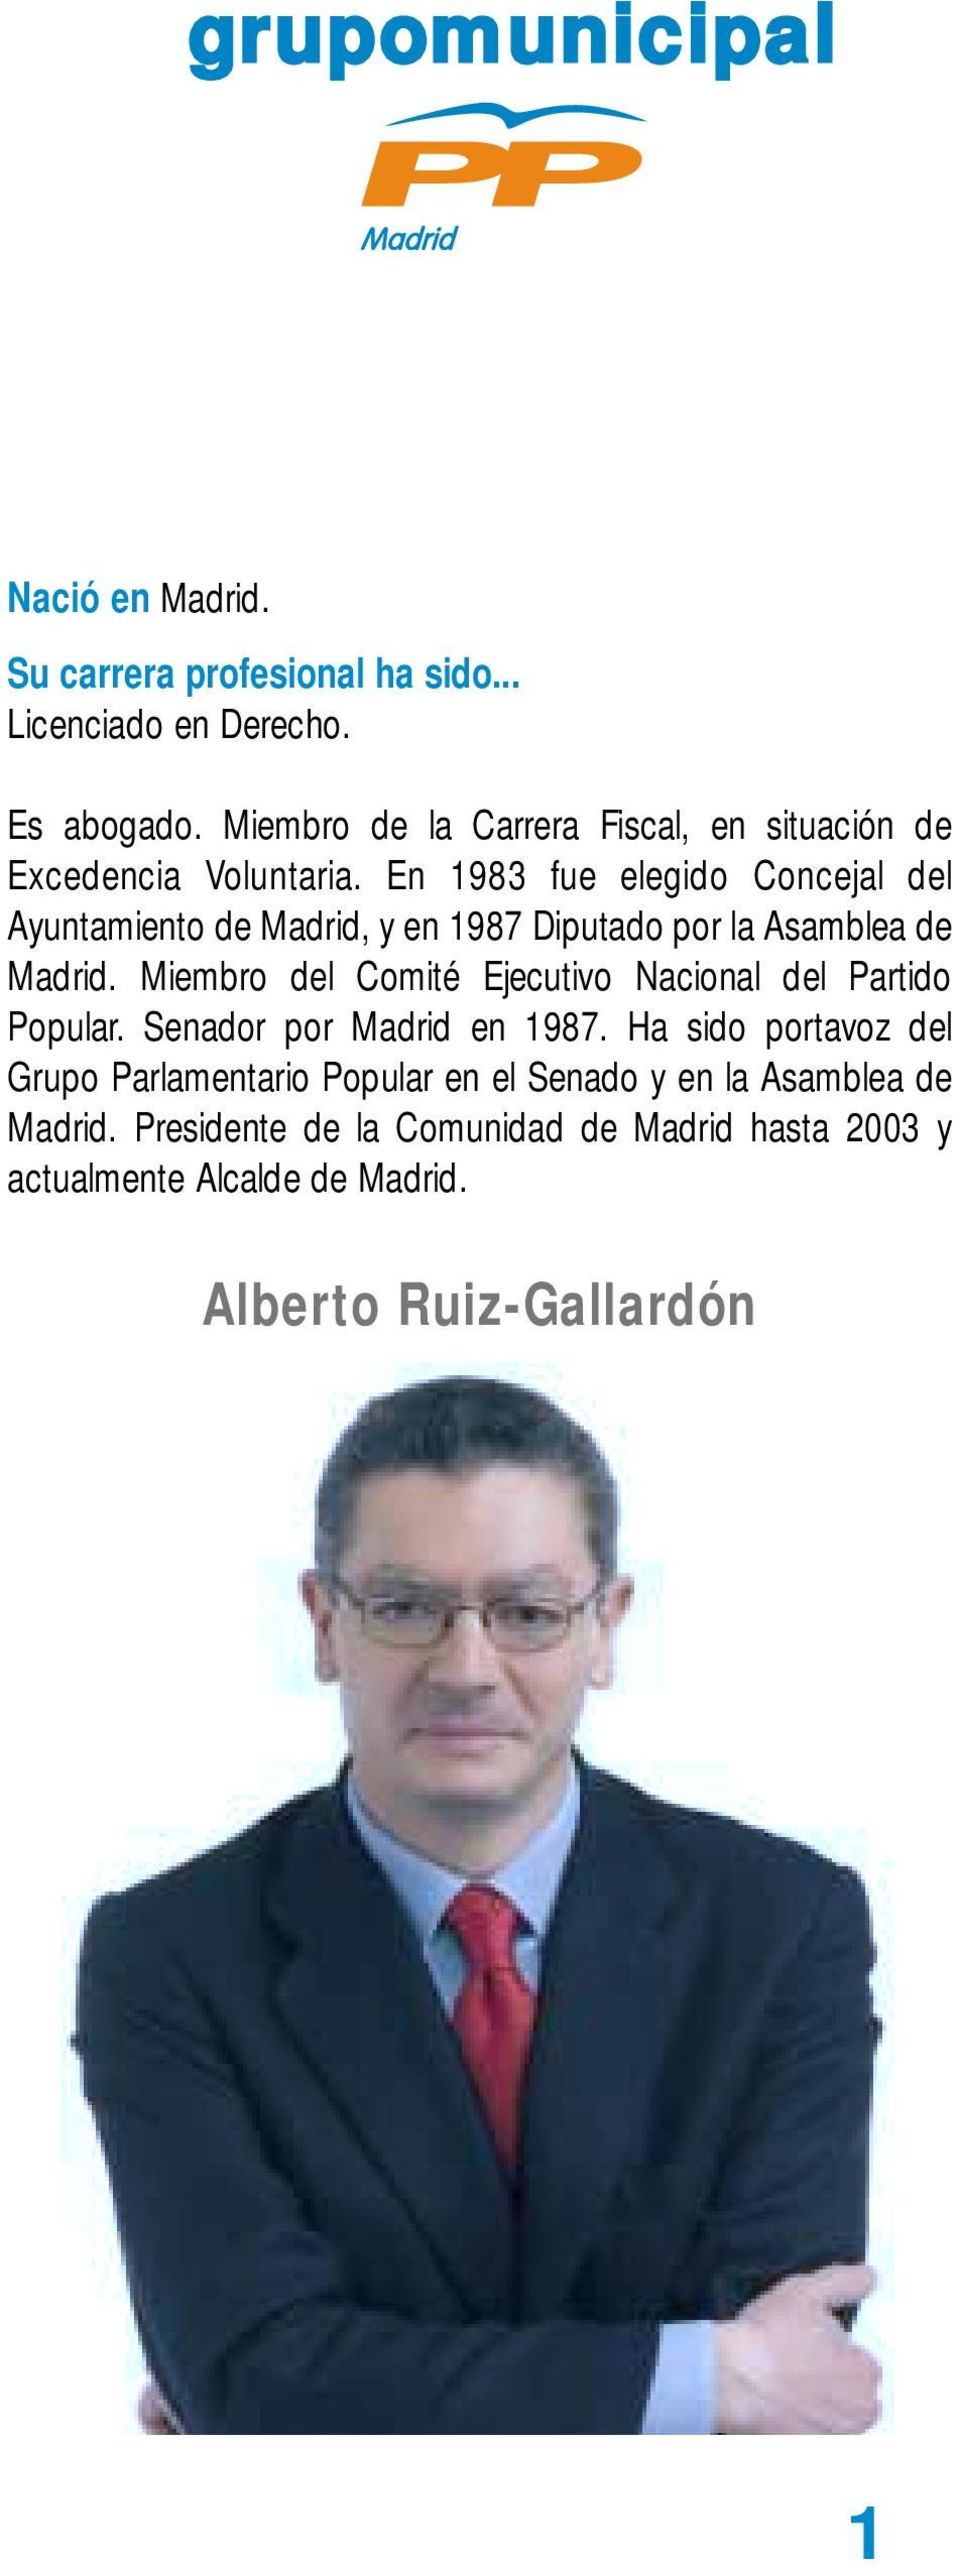 Miembro del Comité Ejecutivo Nacional del Partido Popular. Senador por Madrid en 1987.